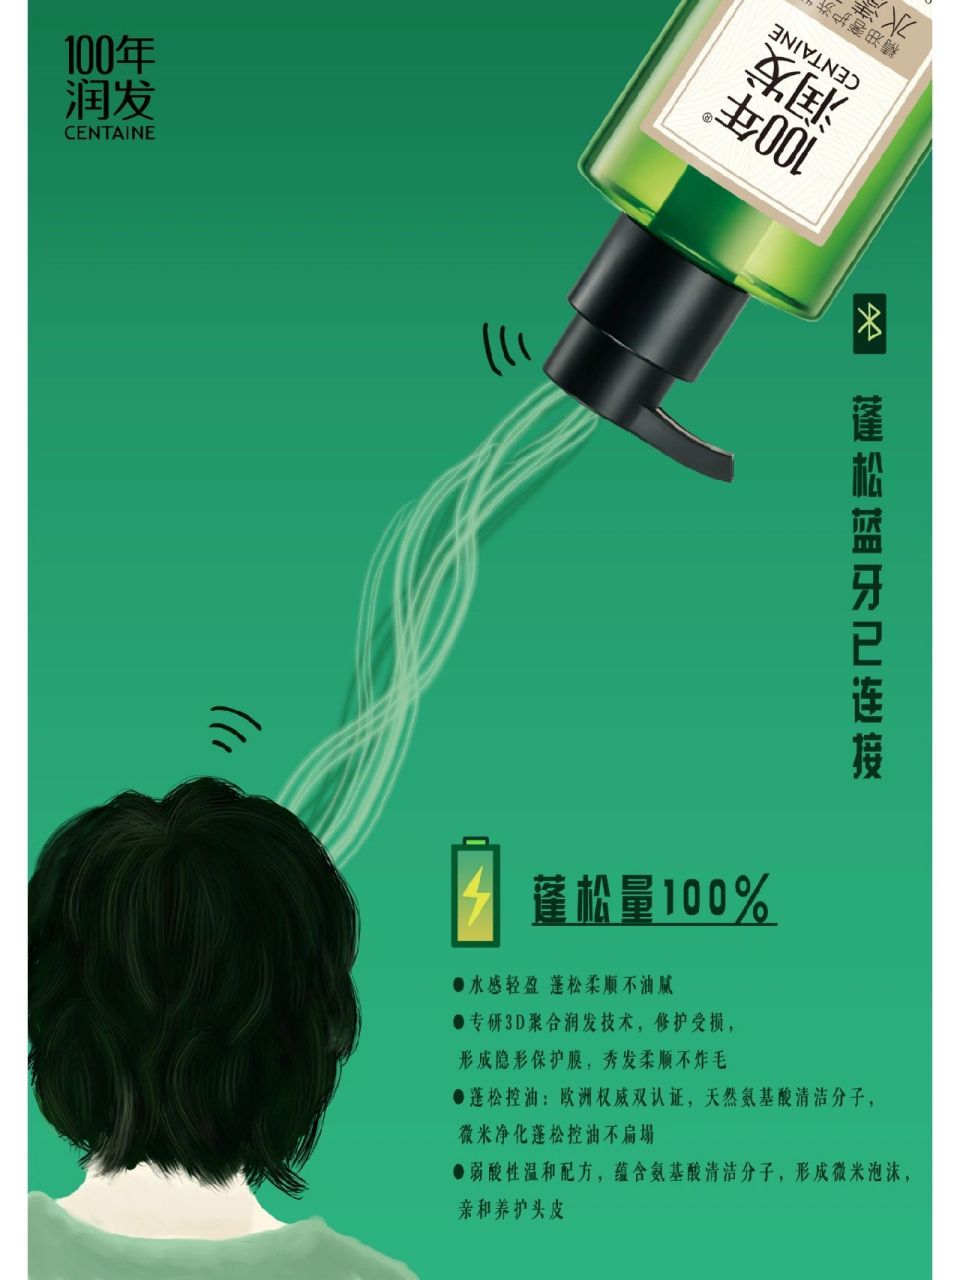 100年润发大广赛平面广告   作品名称:链接成功 创意思想:把洗发水